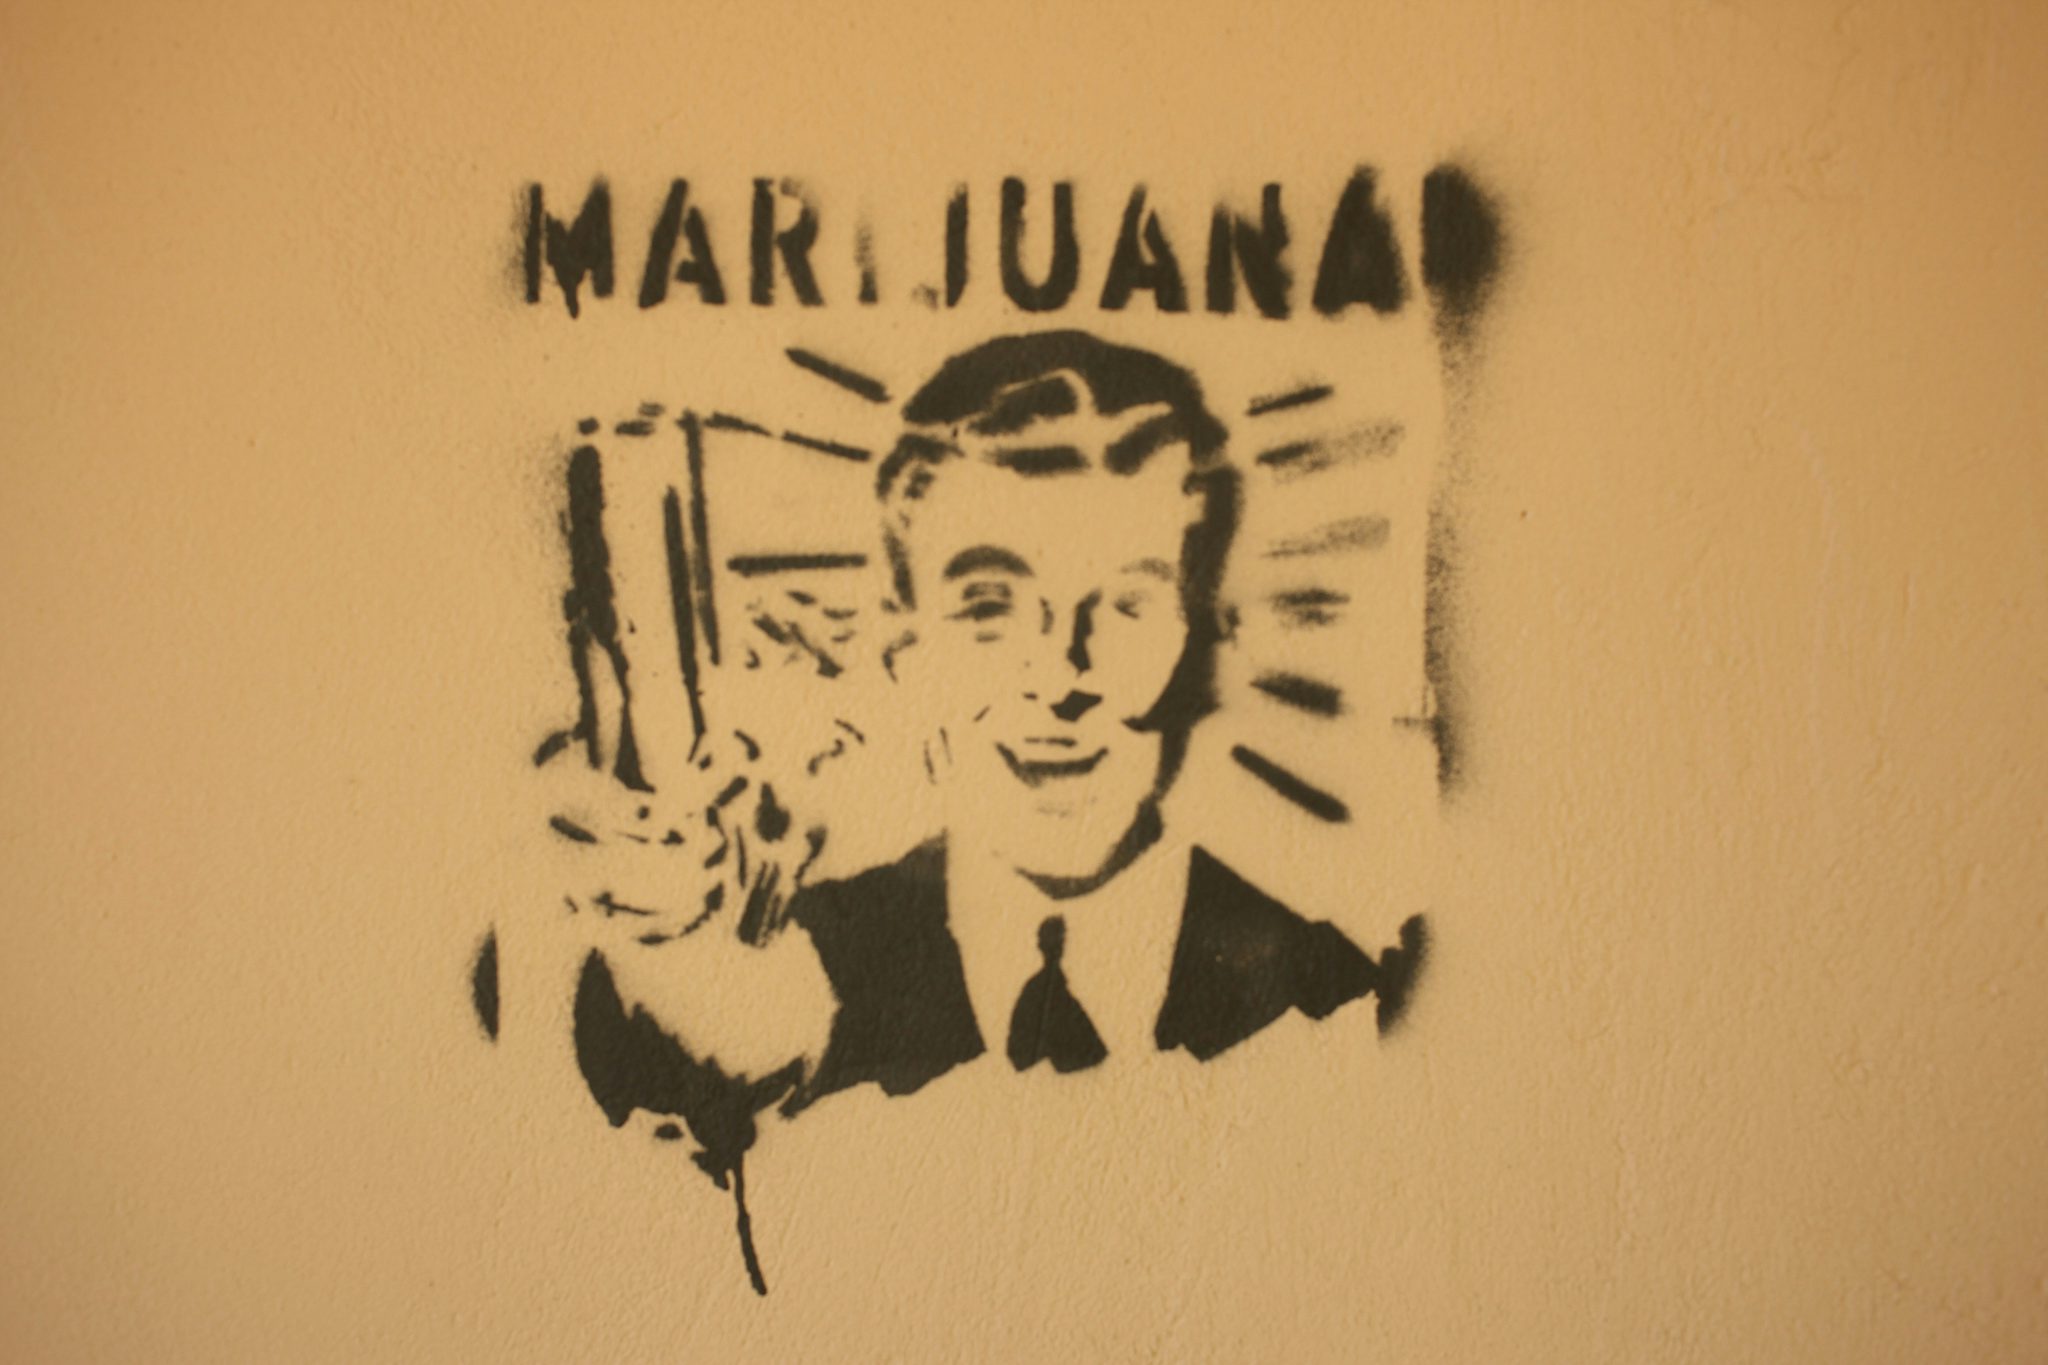 10062652454 59cd098a8c k The History of the Word Marijuana